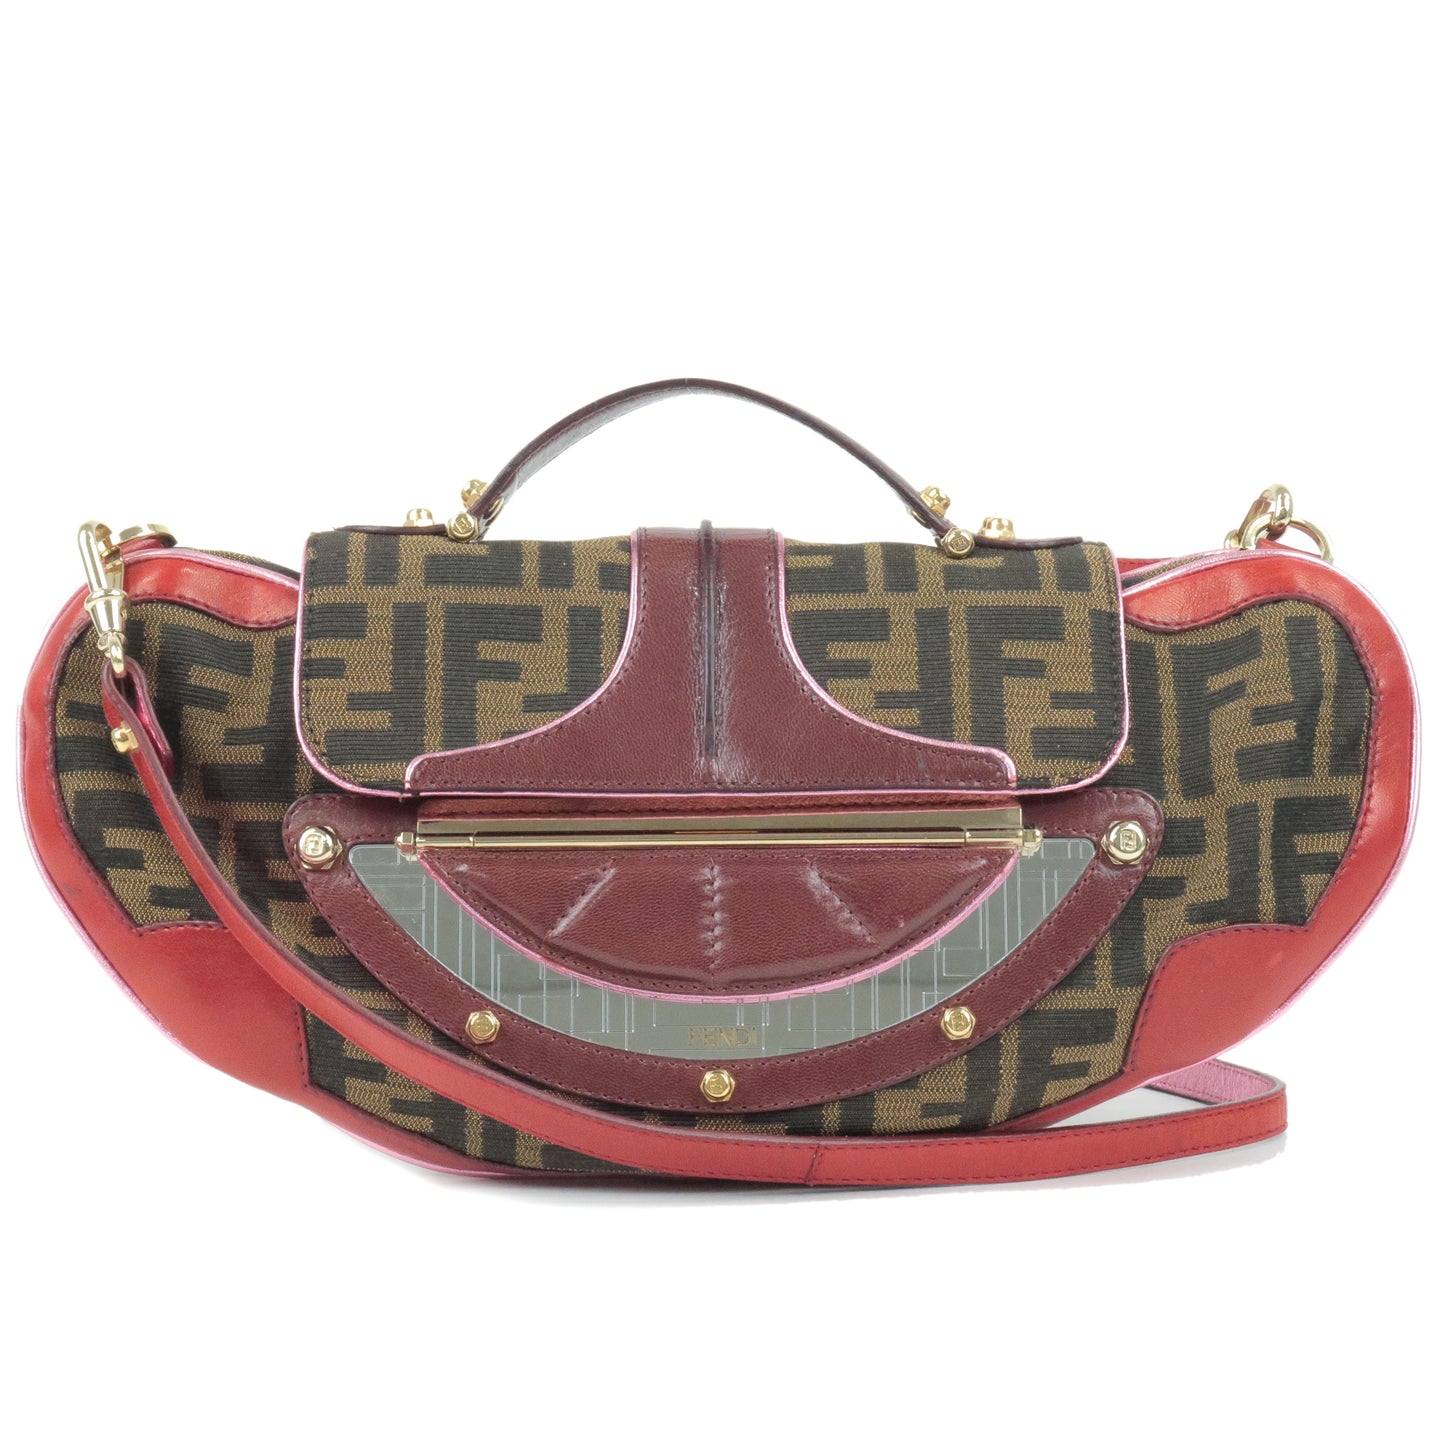 FENDI-Zucca-Canvas-Leather-2Way-Bag-HandBag-Beige-Brown-Red-8BN133